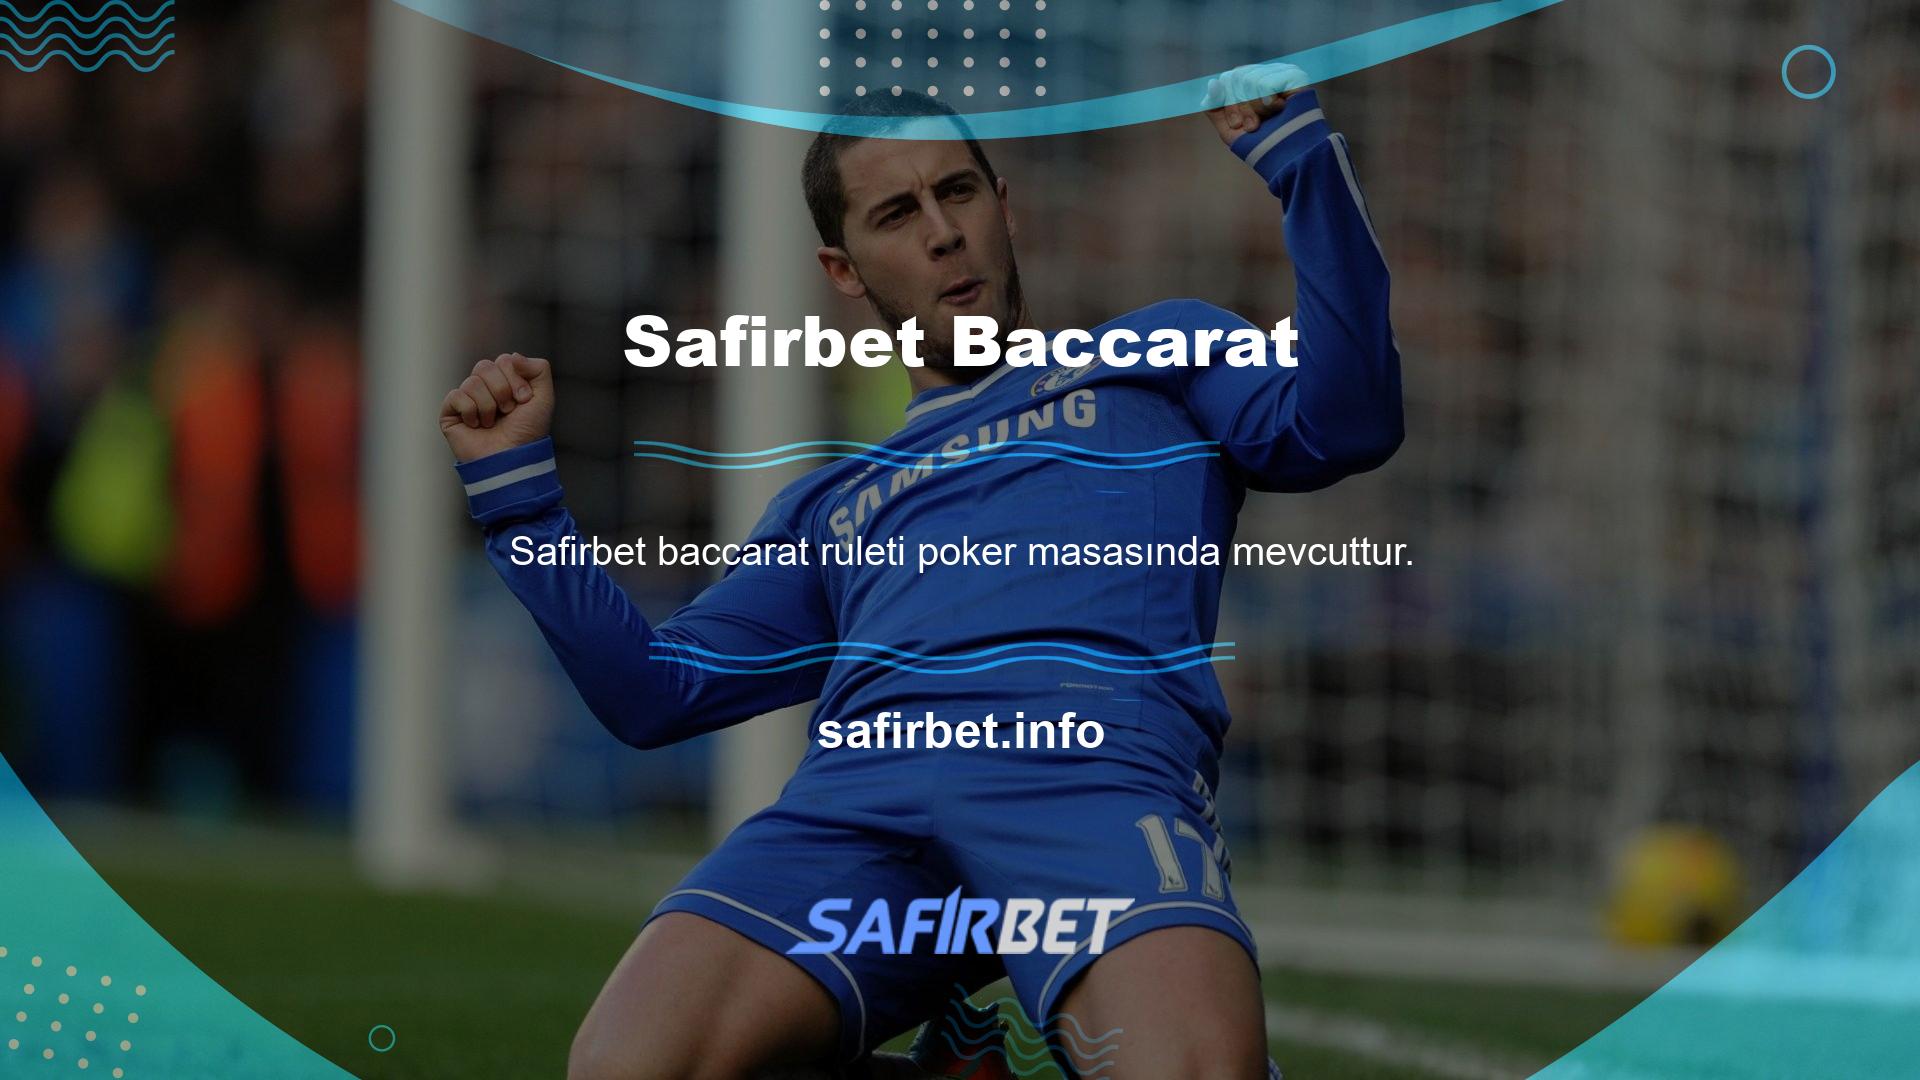 Baccarat, Safirbet bakaratter rulet oyununun canlı casino alanına giriş yaptığınızda alt kısmında yer almaktadır